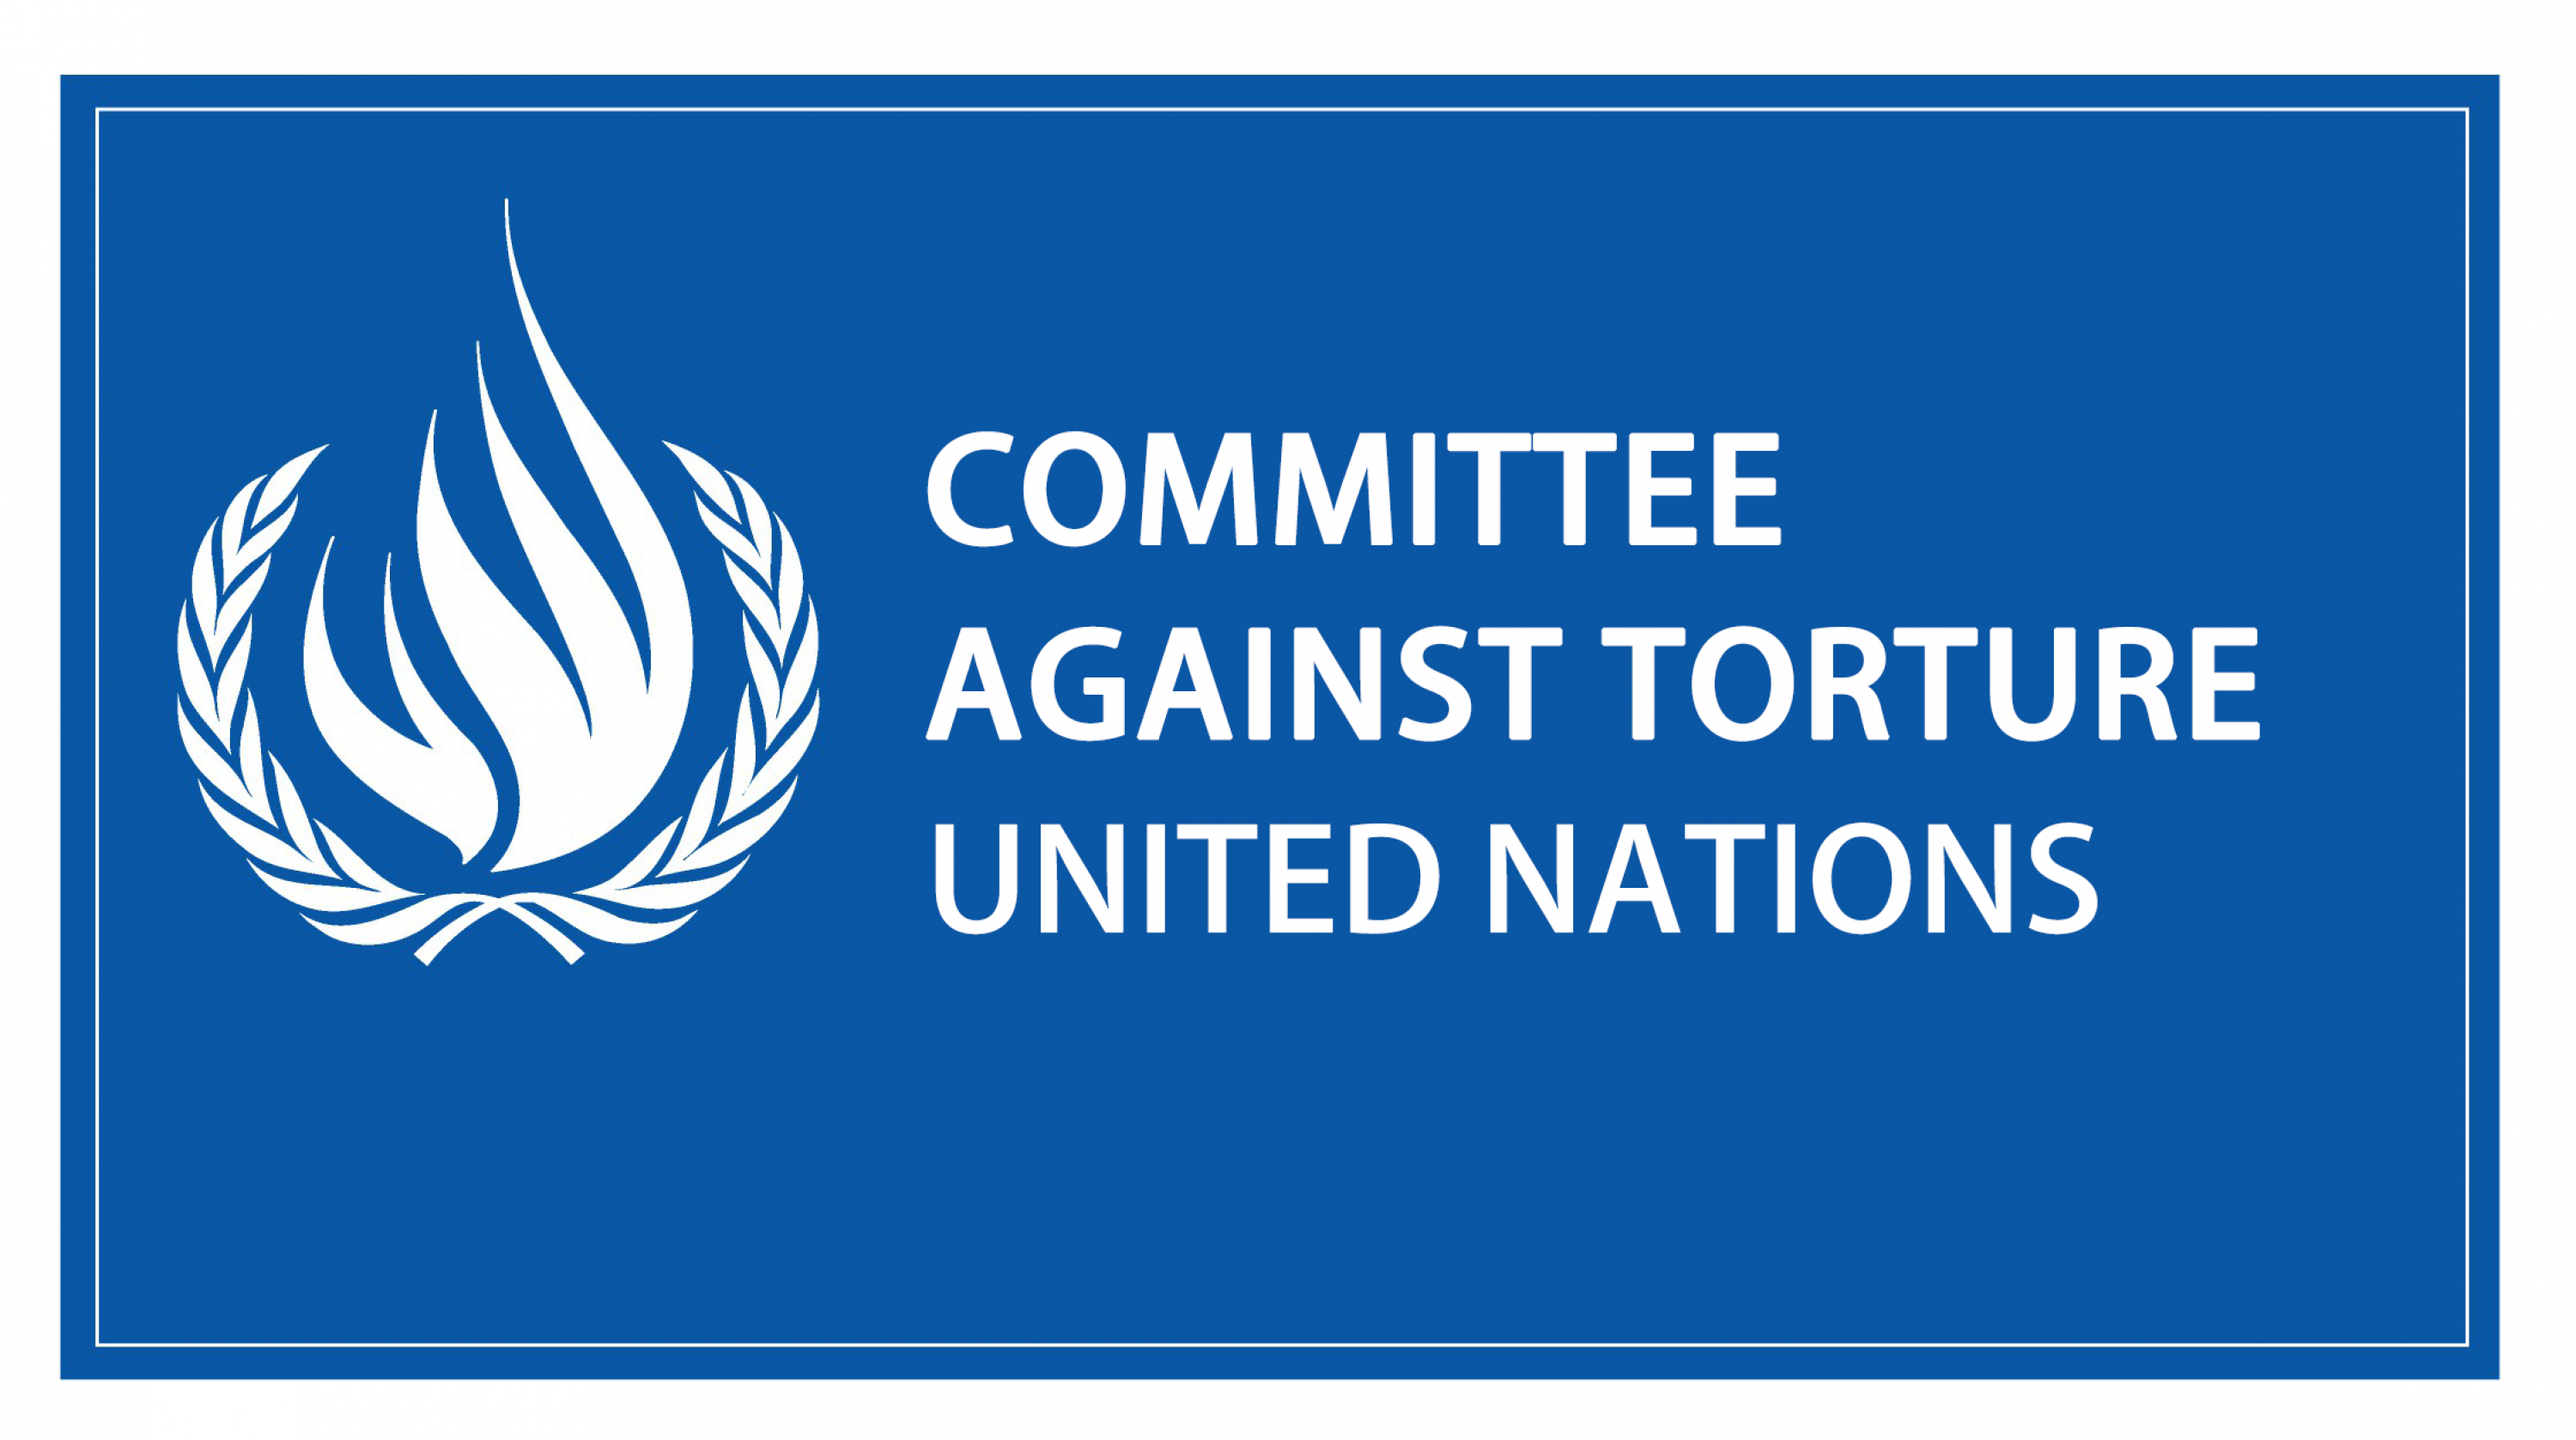 Против пыток и других жестоких. Комитет против пыток ООН эмблема. Факультативный протокол к конвенции против пыток. Логотип ООН. Всемирная организация против пыток.